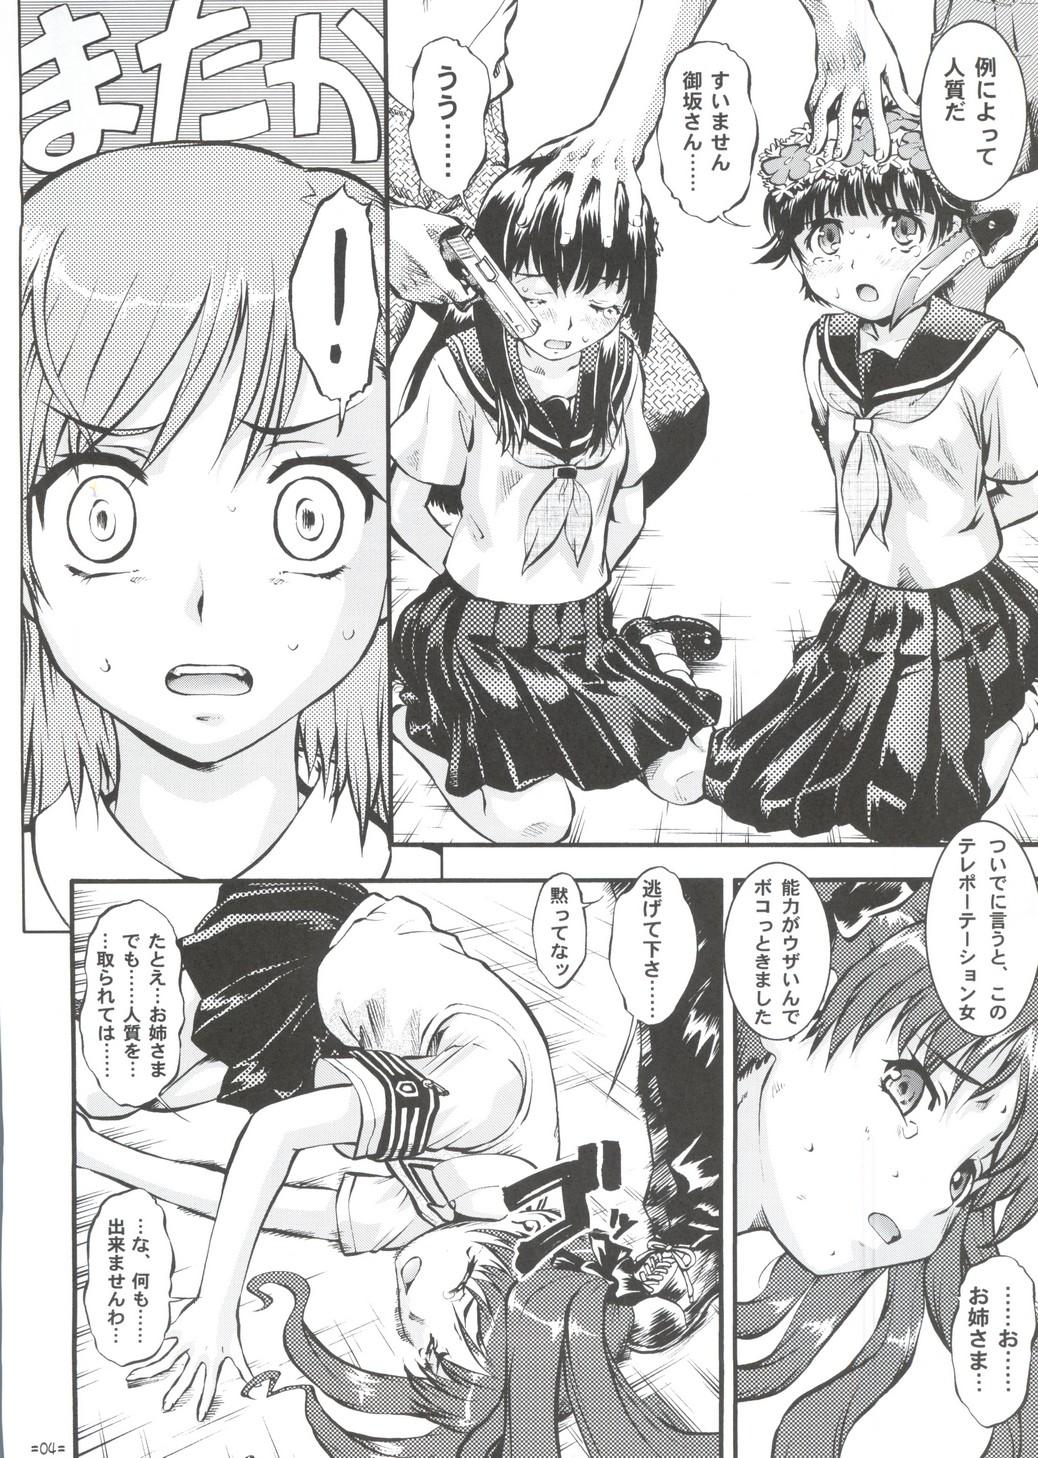 Tites W Poron TO-R - Toaru kagaku no railgun Koihime musou Chaturbate - Page 3